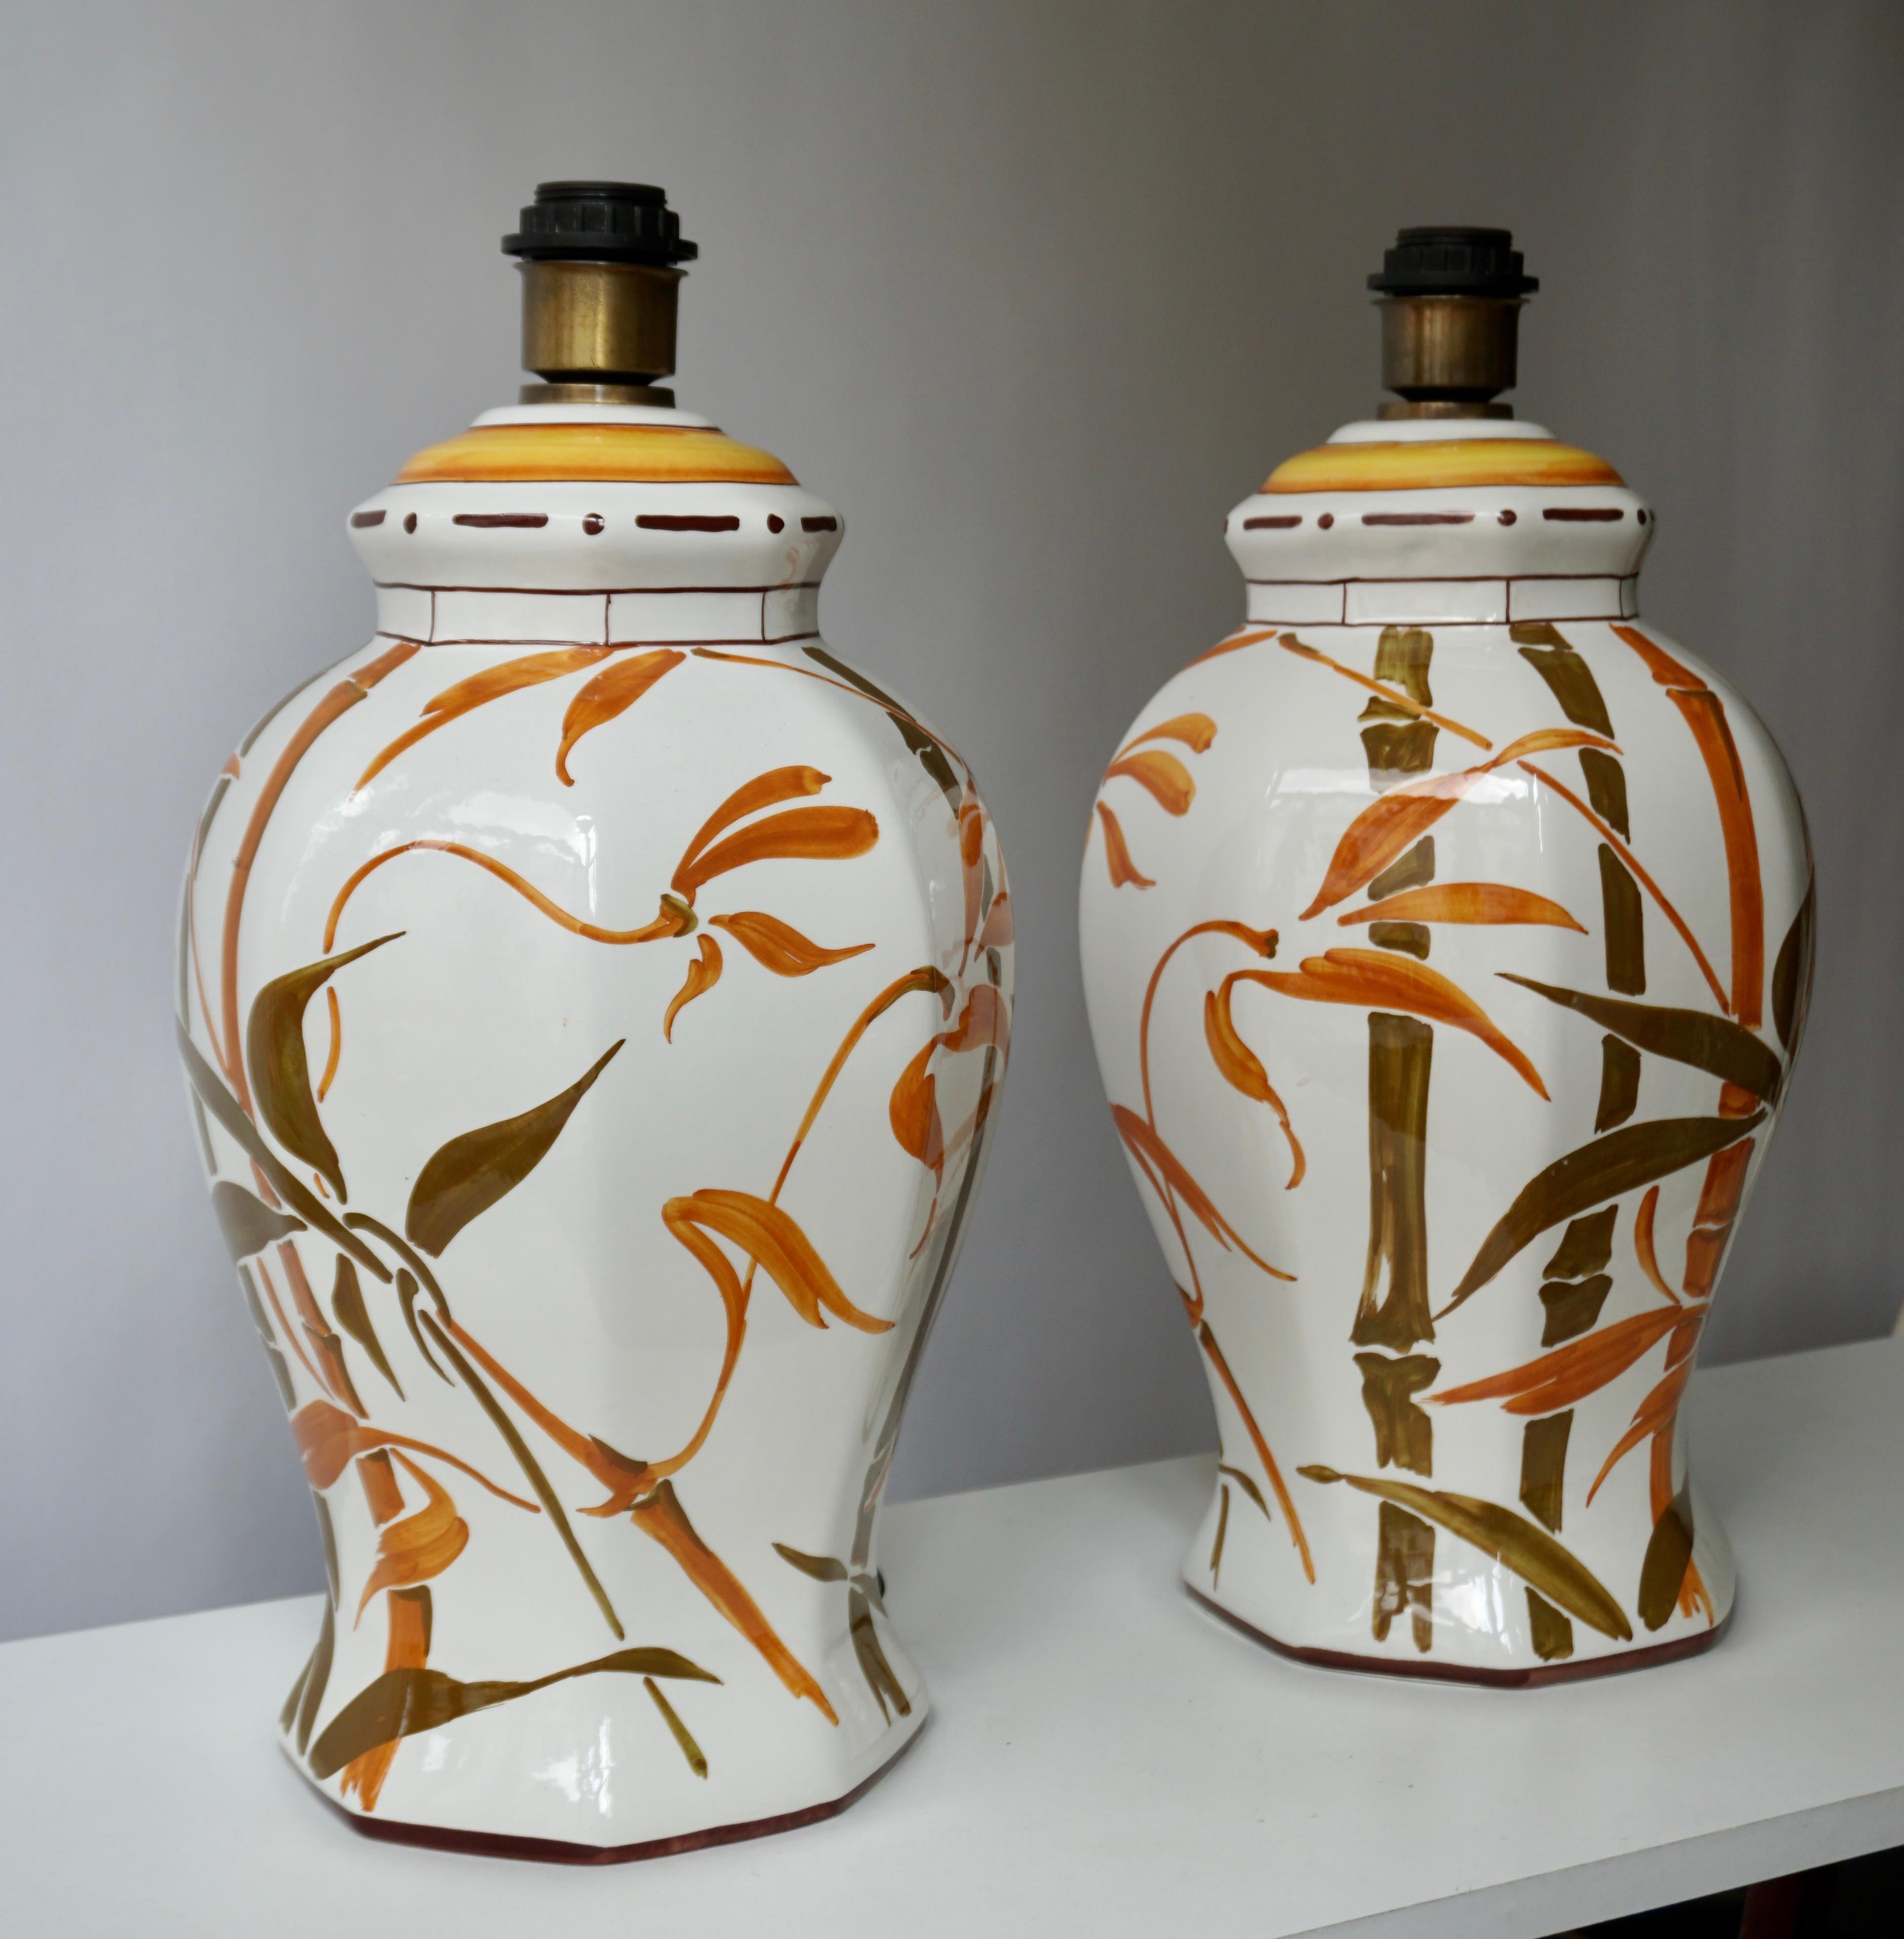 Deux élégantes lampes de table en céramique de style Mid-Century Modern Hollywood Regency avec des feuilles de bambou ou des motifs botaniques peints à la main sur une glaçure blanche brillante. Abat-jour non compris.

Chaque lampe est livrée avec